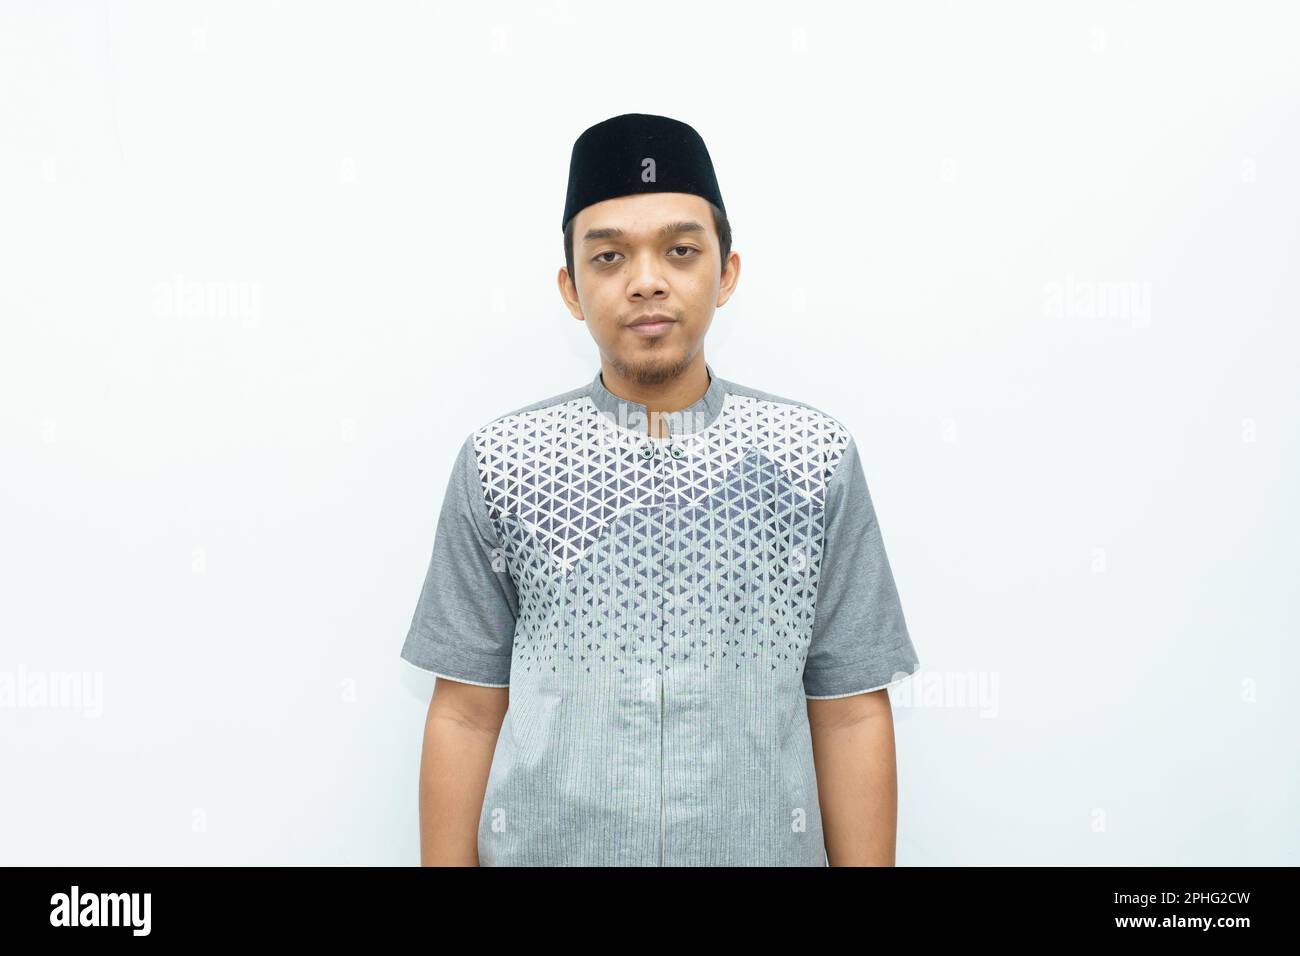 Ritratto dell'uomo musulmano indonesiano asiatico sorridente Foto Stock